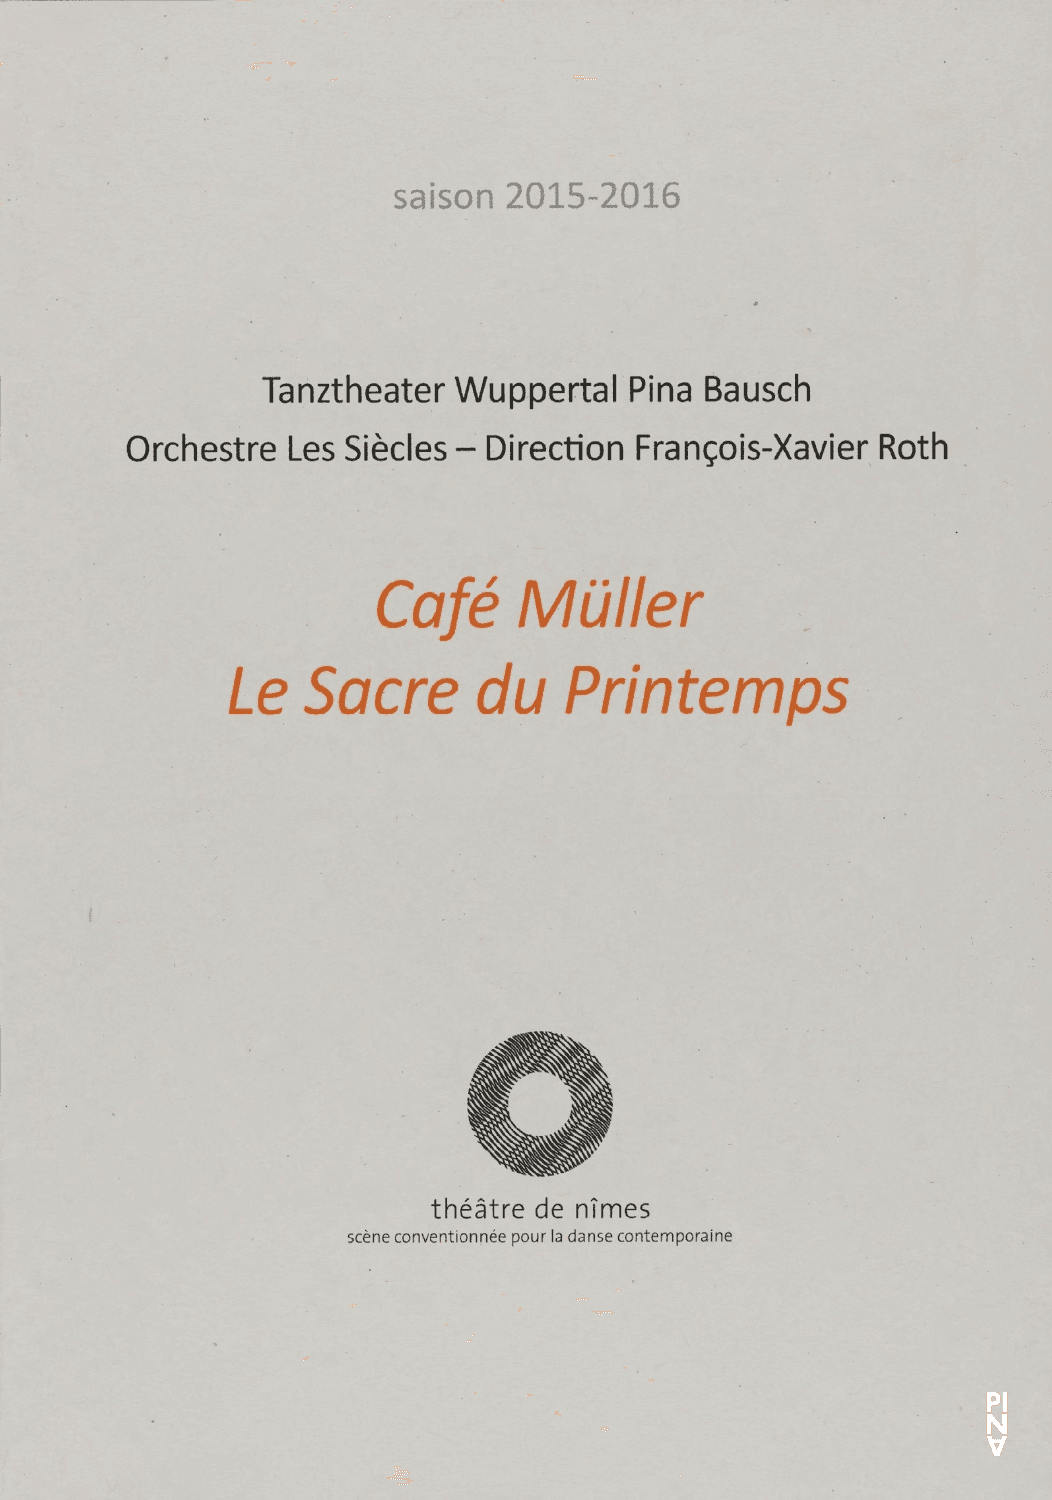 Programme pour « Café Müller » et « Le Sacre du printemps » de Pina Bausch avec Tanztheater Wuppertal à Nîmes, 6 juin 2016 – 9 juin 2016